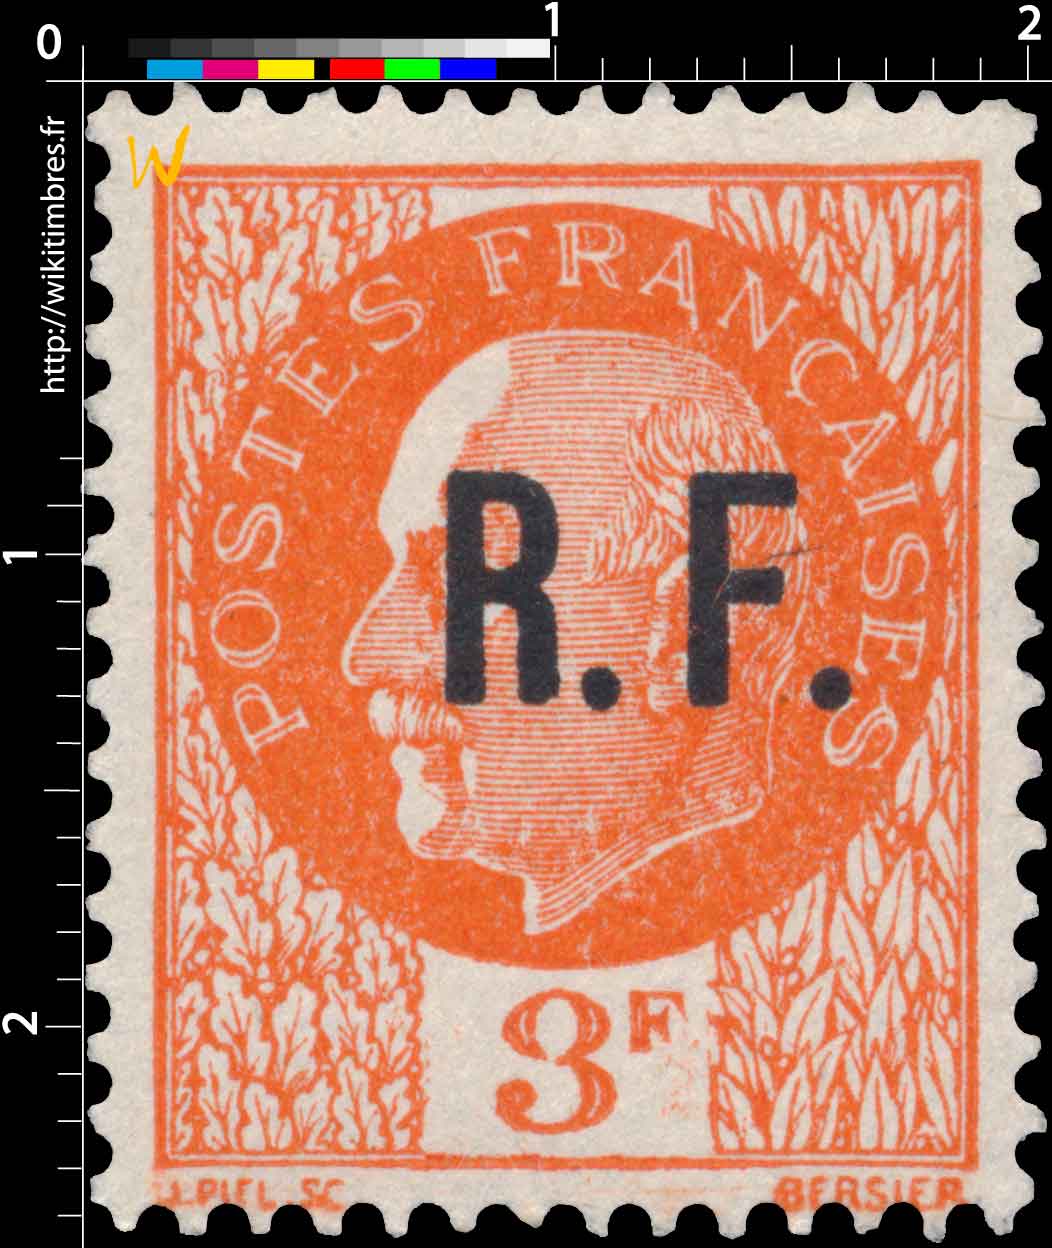 R.F. - type Bersier